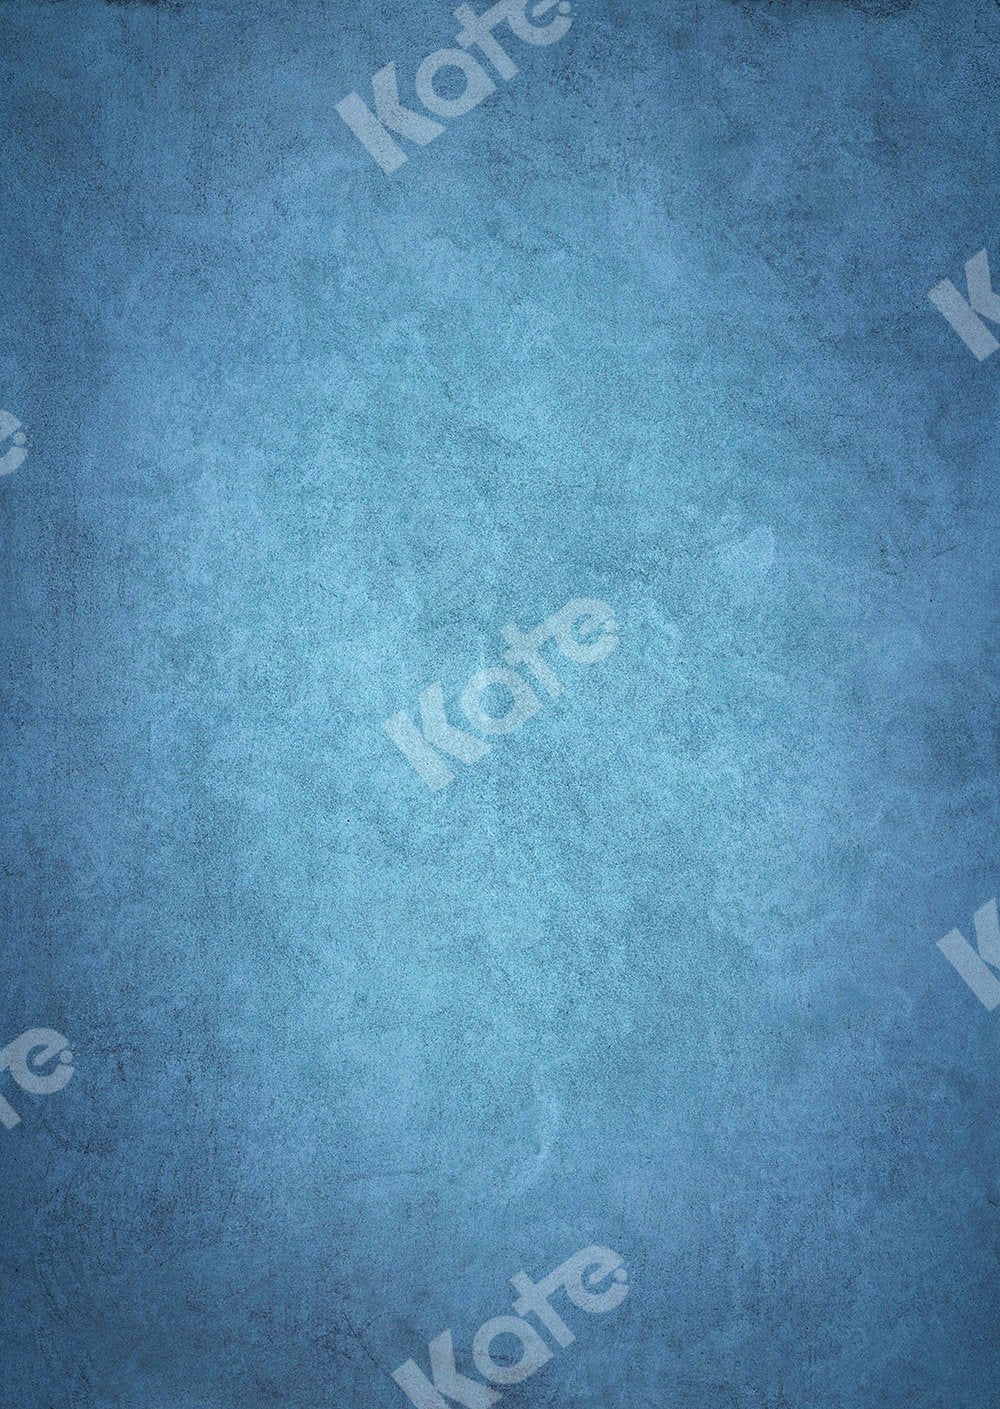 RTS-Kate 抽象的な青い写真の背景